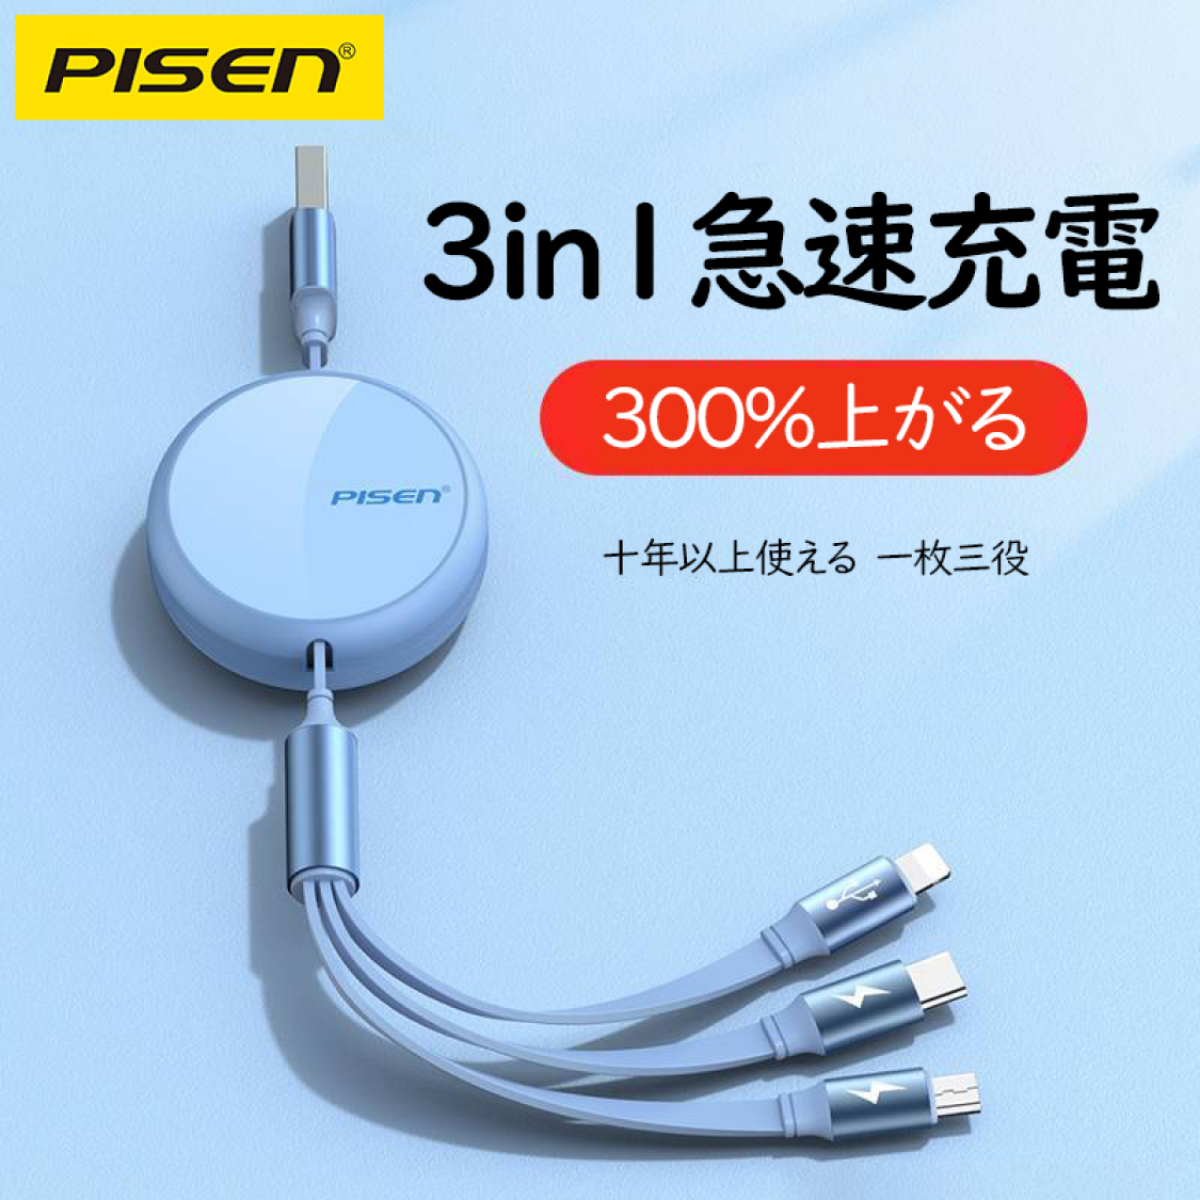 PISEN 3in1巻き取り式充電ケーブル 3in1 3A｜一枚三役｜伸縮自在｜ポップアップしない｜急速充電